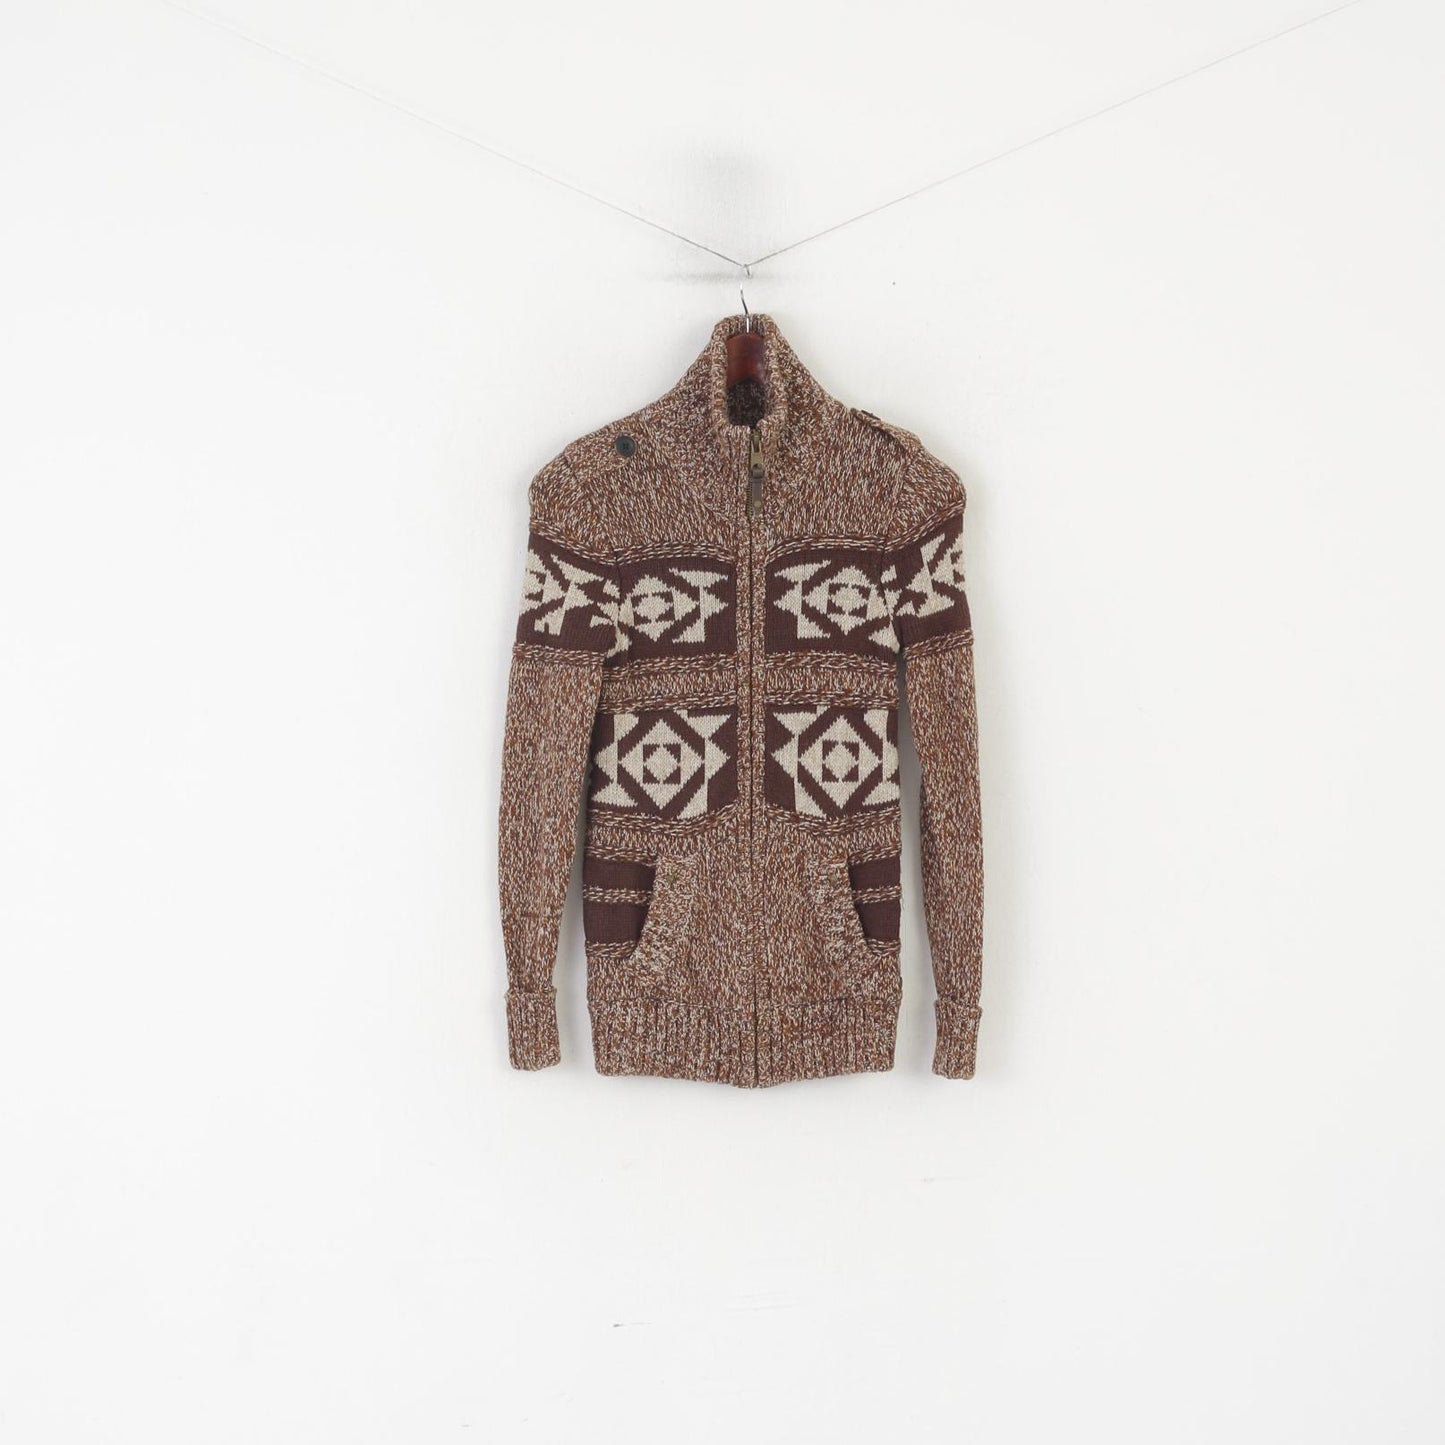 Groggy by jbc Cardigan da donna XS Maglione lavorato a maglia con cerniera intera in cotone marrone azteco